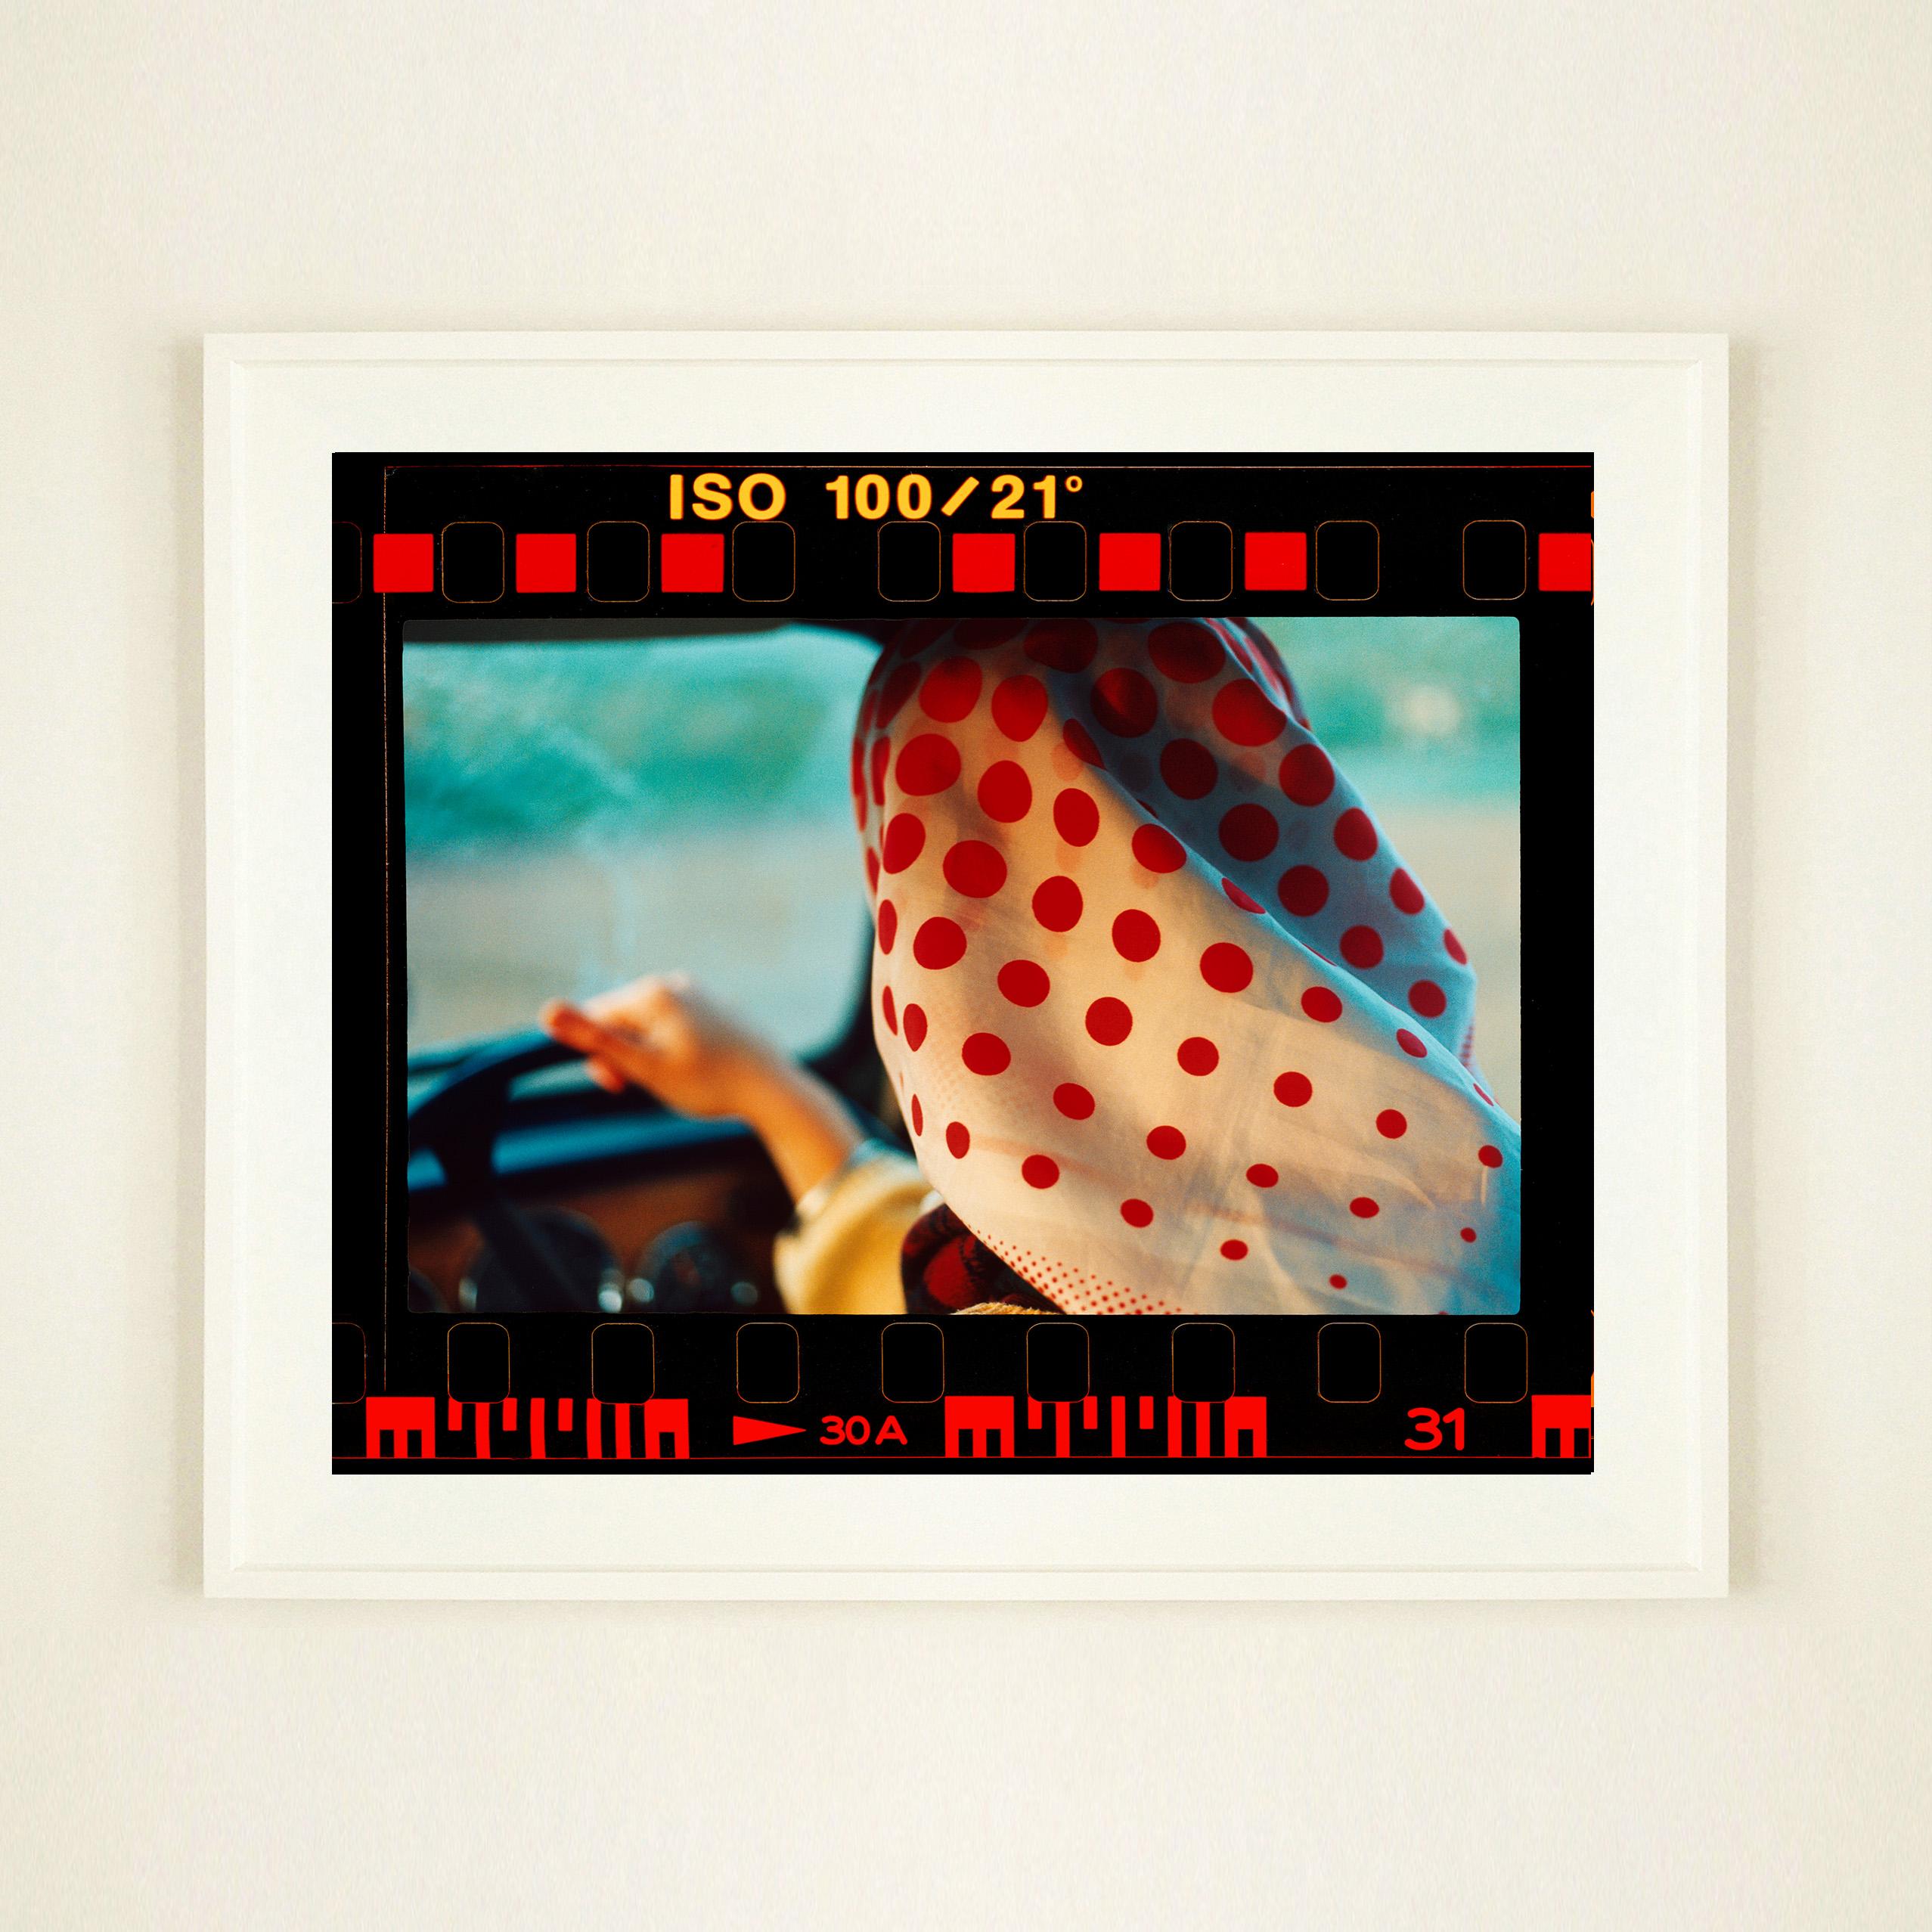 On the Road, stellt klassische Richard Heeps Kunstwerke neu dar, die mit vollem Filmfalz wie ein vergrößerter Kontaktbogen präsentiert werden. 
Anita, Foto aus Richard Heeps autobiografischer Serie 